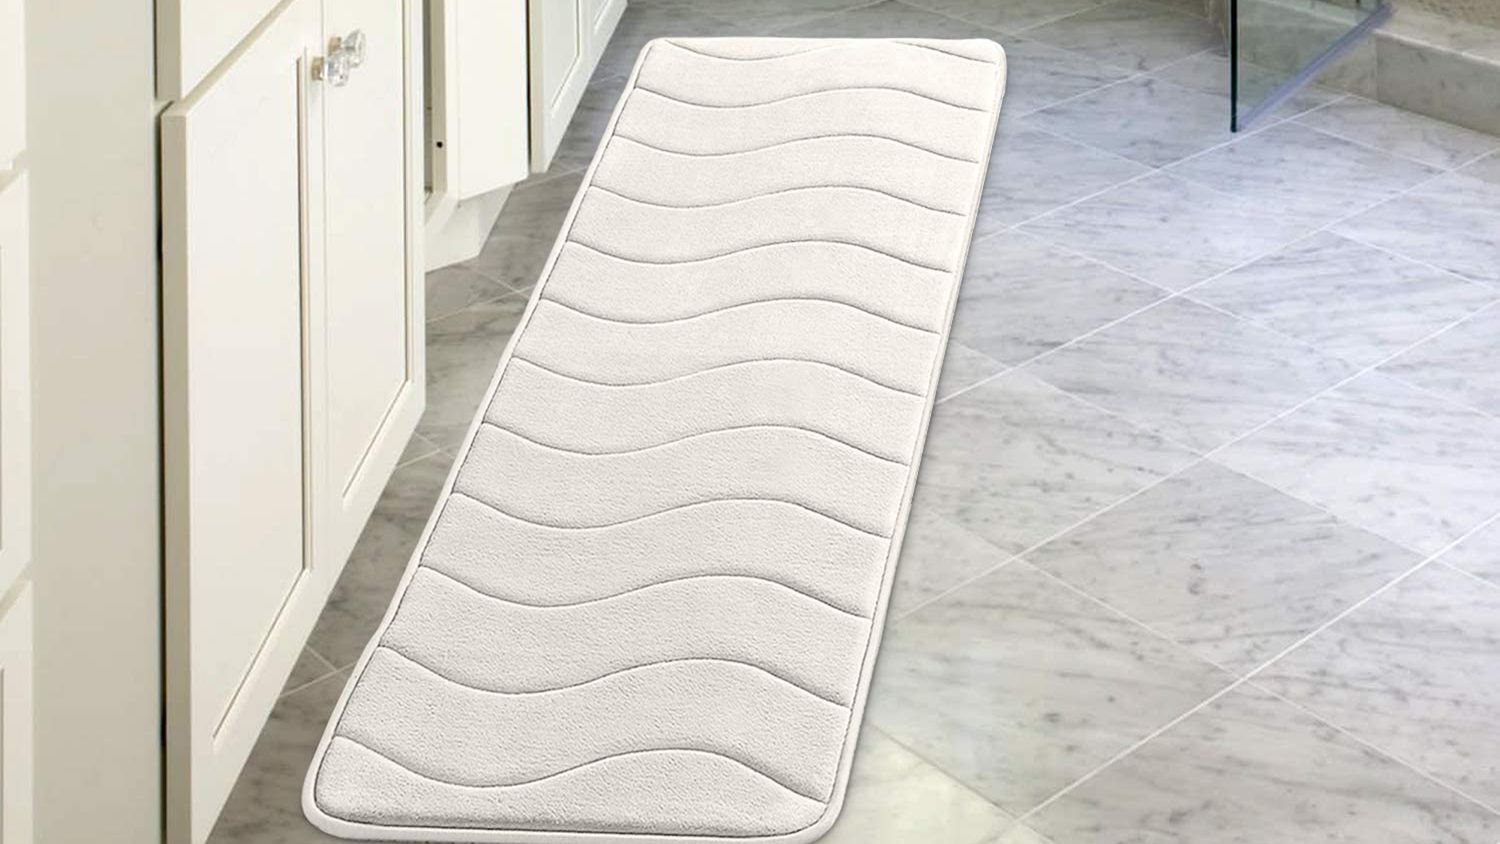 Absorbent Soft Non-slip Rug Memory Foam Bath Bathroom Bedroom Floor Shower Mat 